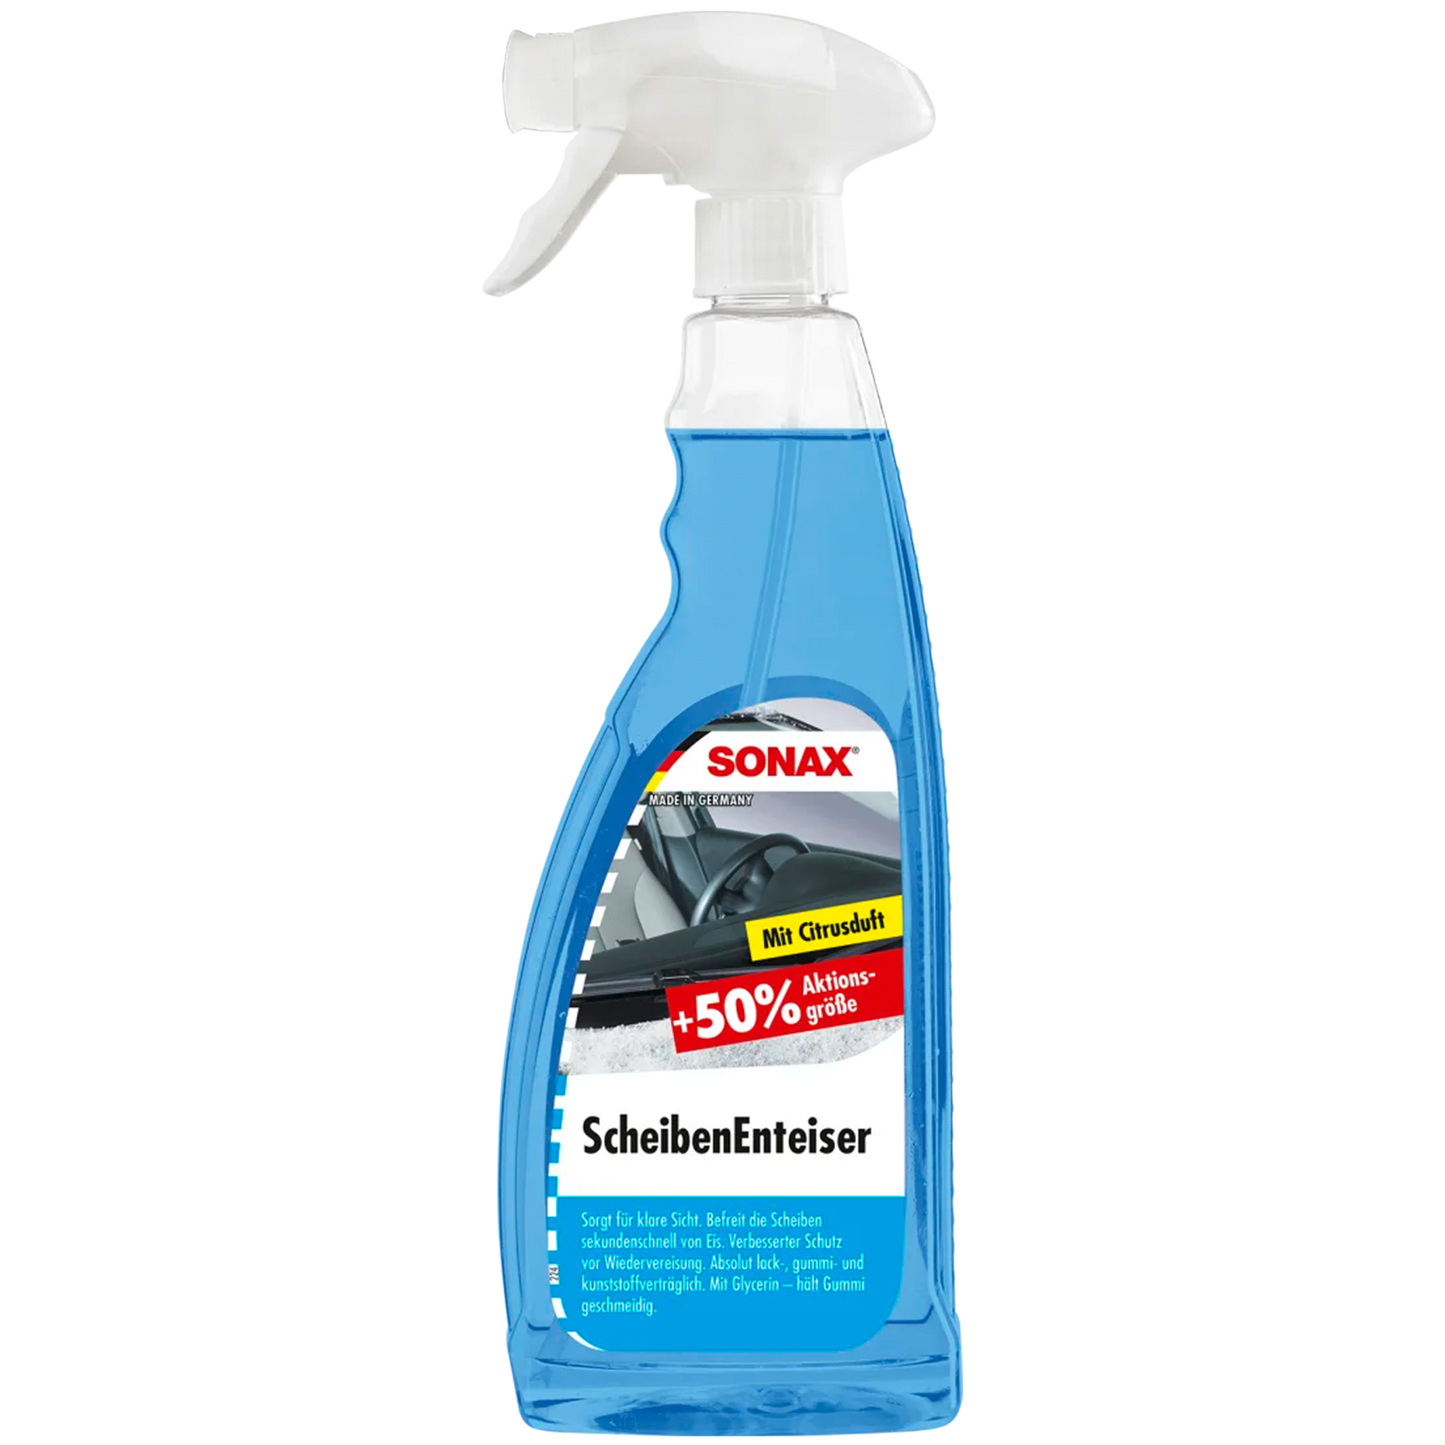 SONAX "ScheibenEnteiser" - Spray - 750ml